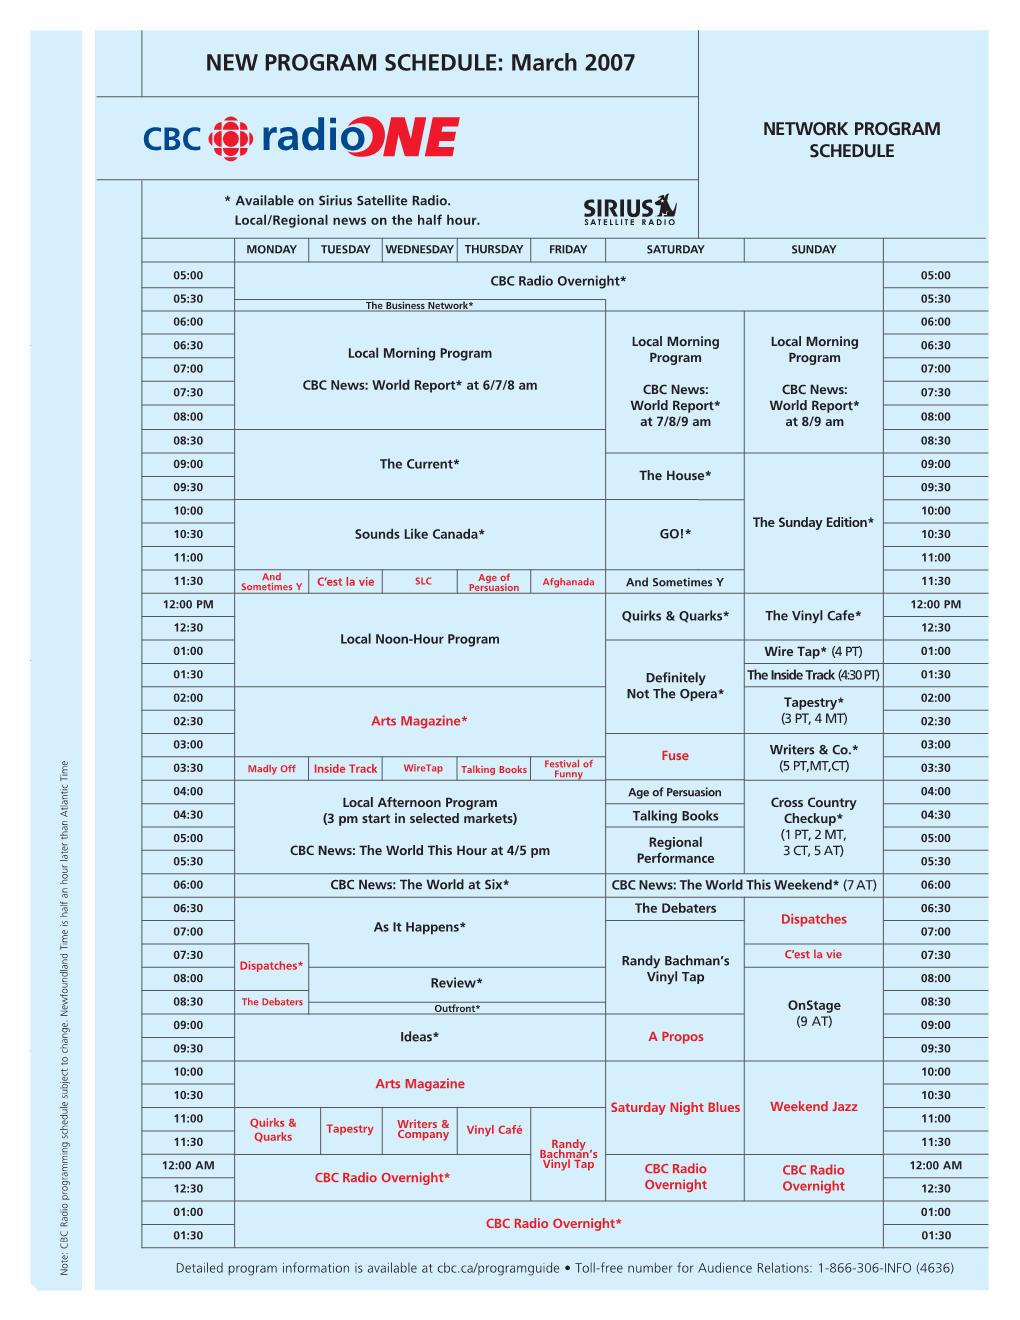 New Network R1 Schedule 06/07